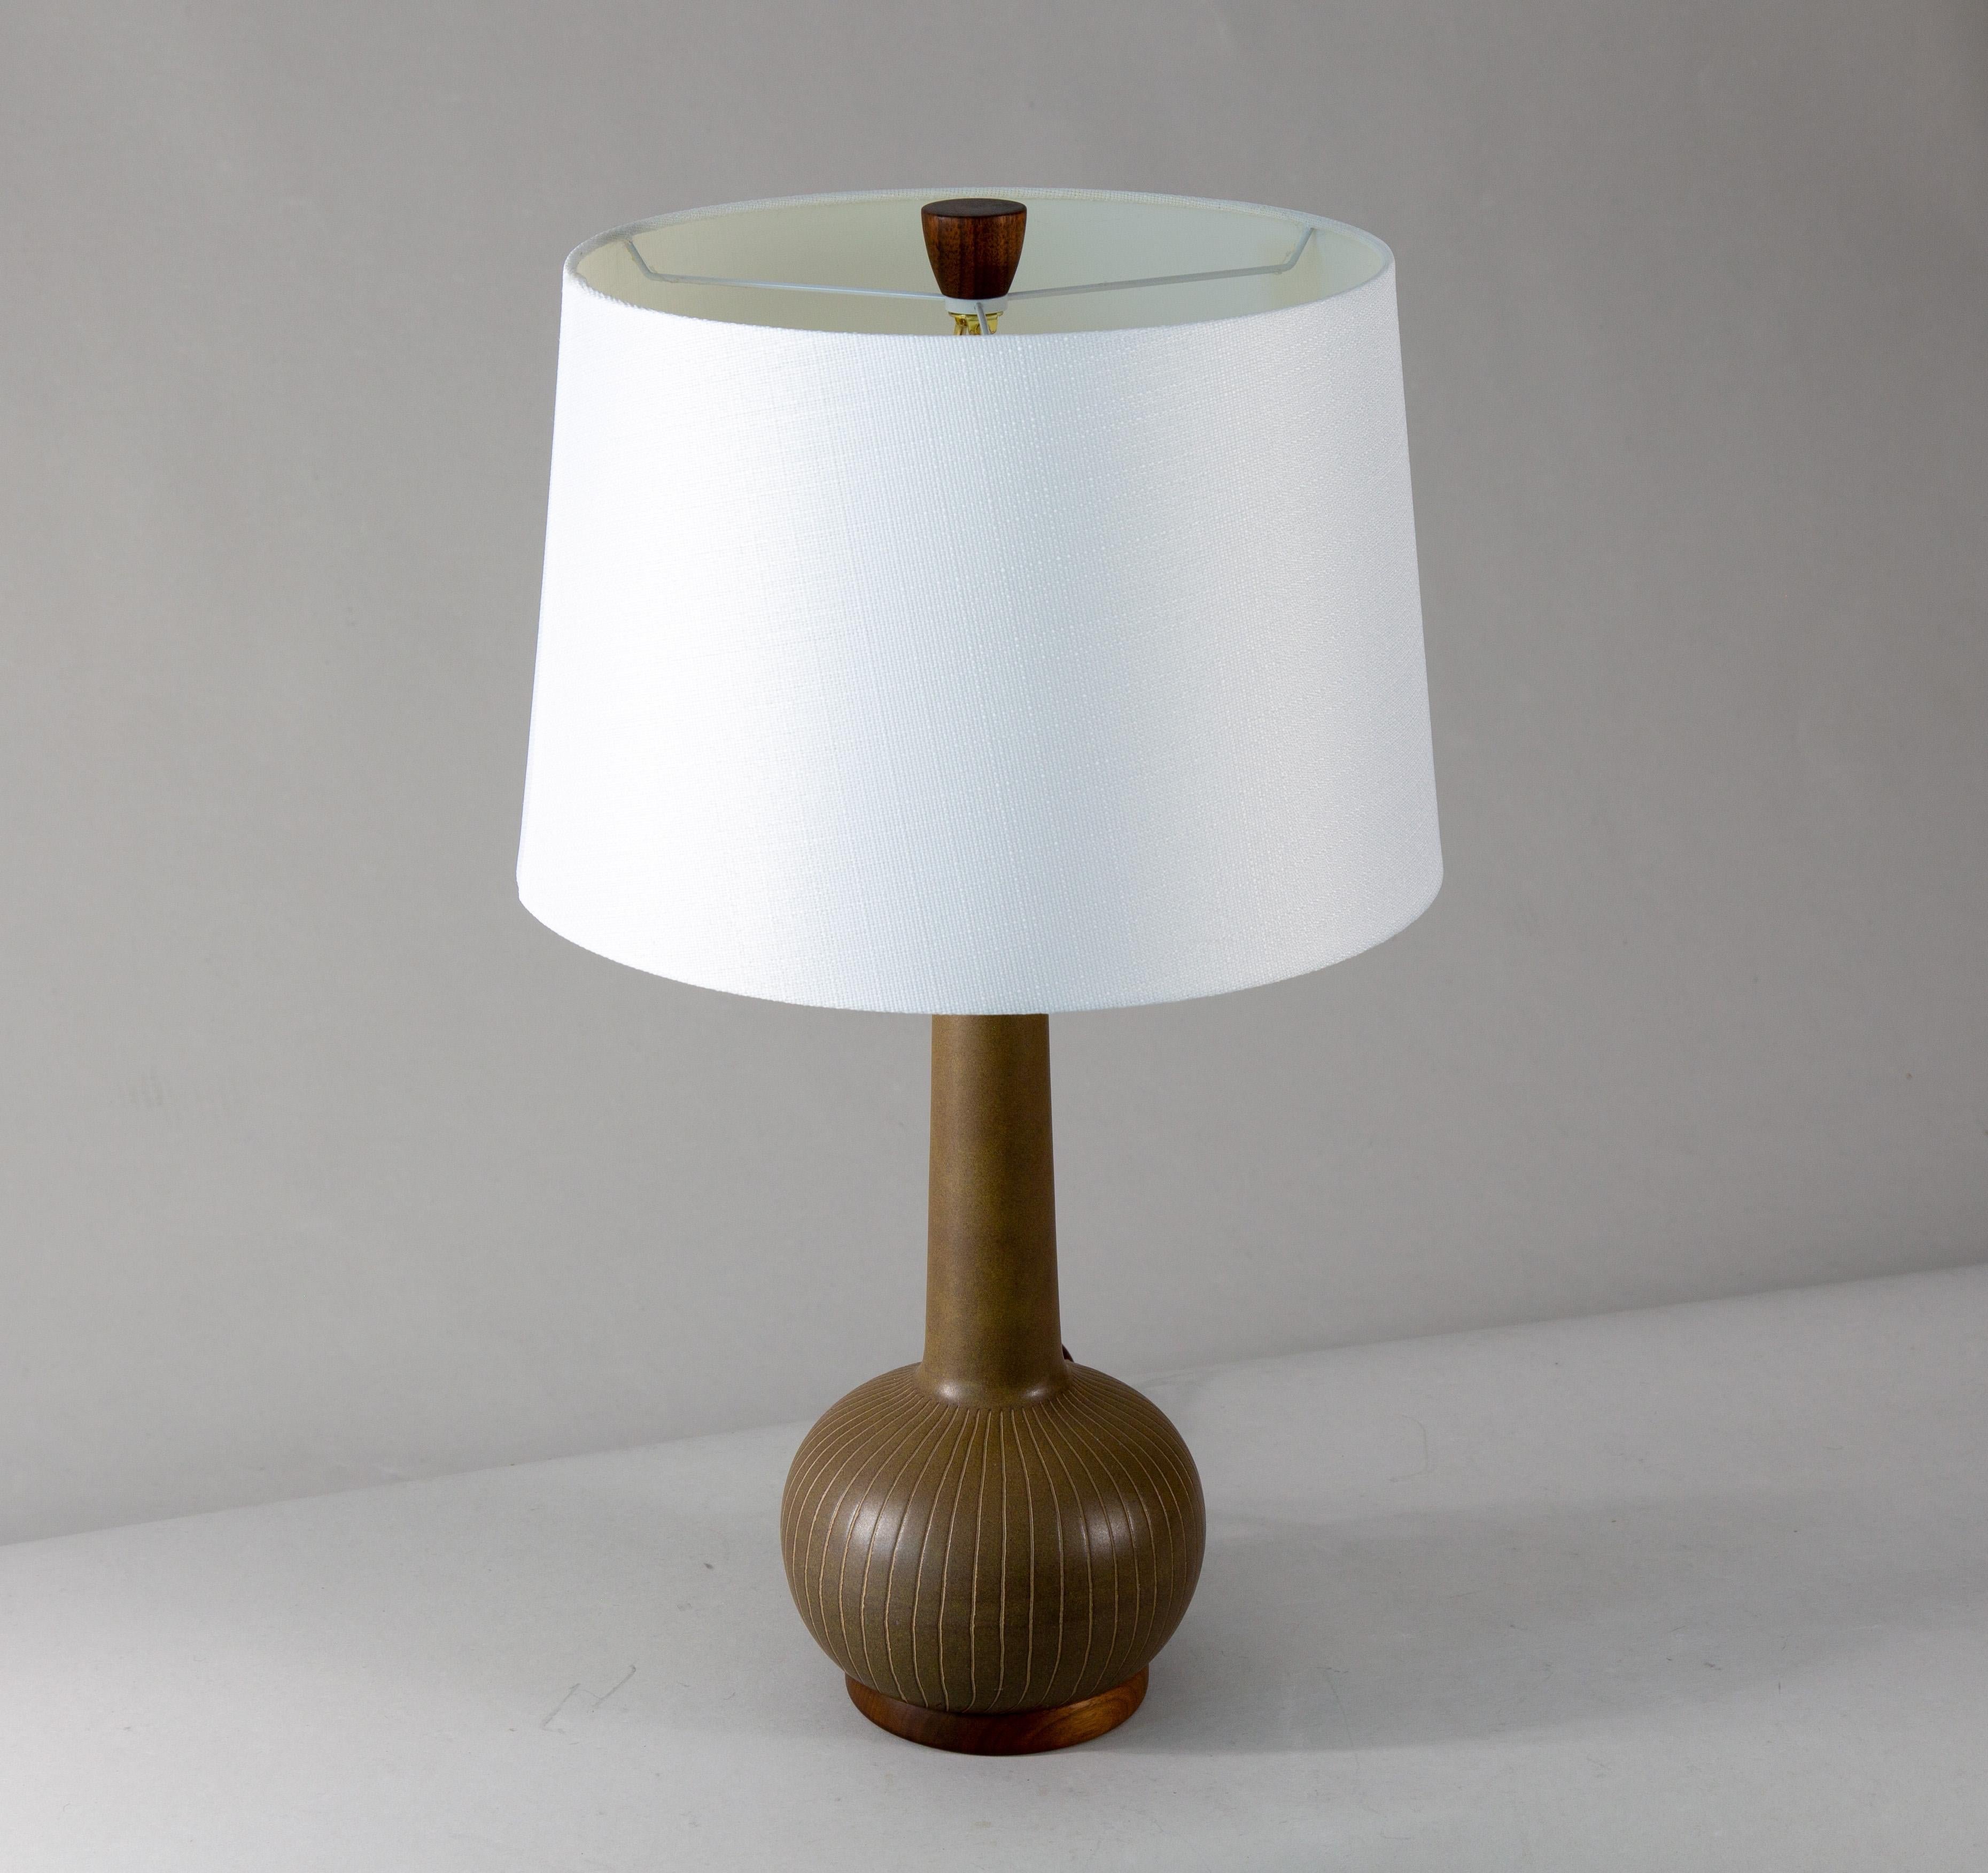 Cette lampe de table des années 1960, conçue par Jane et Gordon Martz des Marshall Studios à Veedersburg (Indiana), est un objet de collection. Ces lampes sont très recherchées et apparaissent dans les designs du monde entier. Alliant sophistication